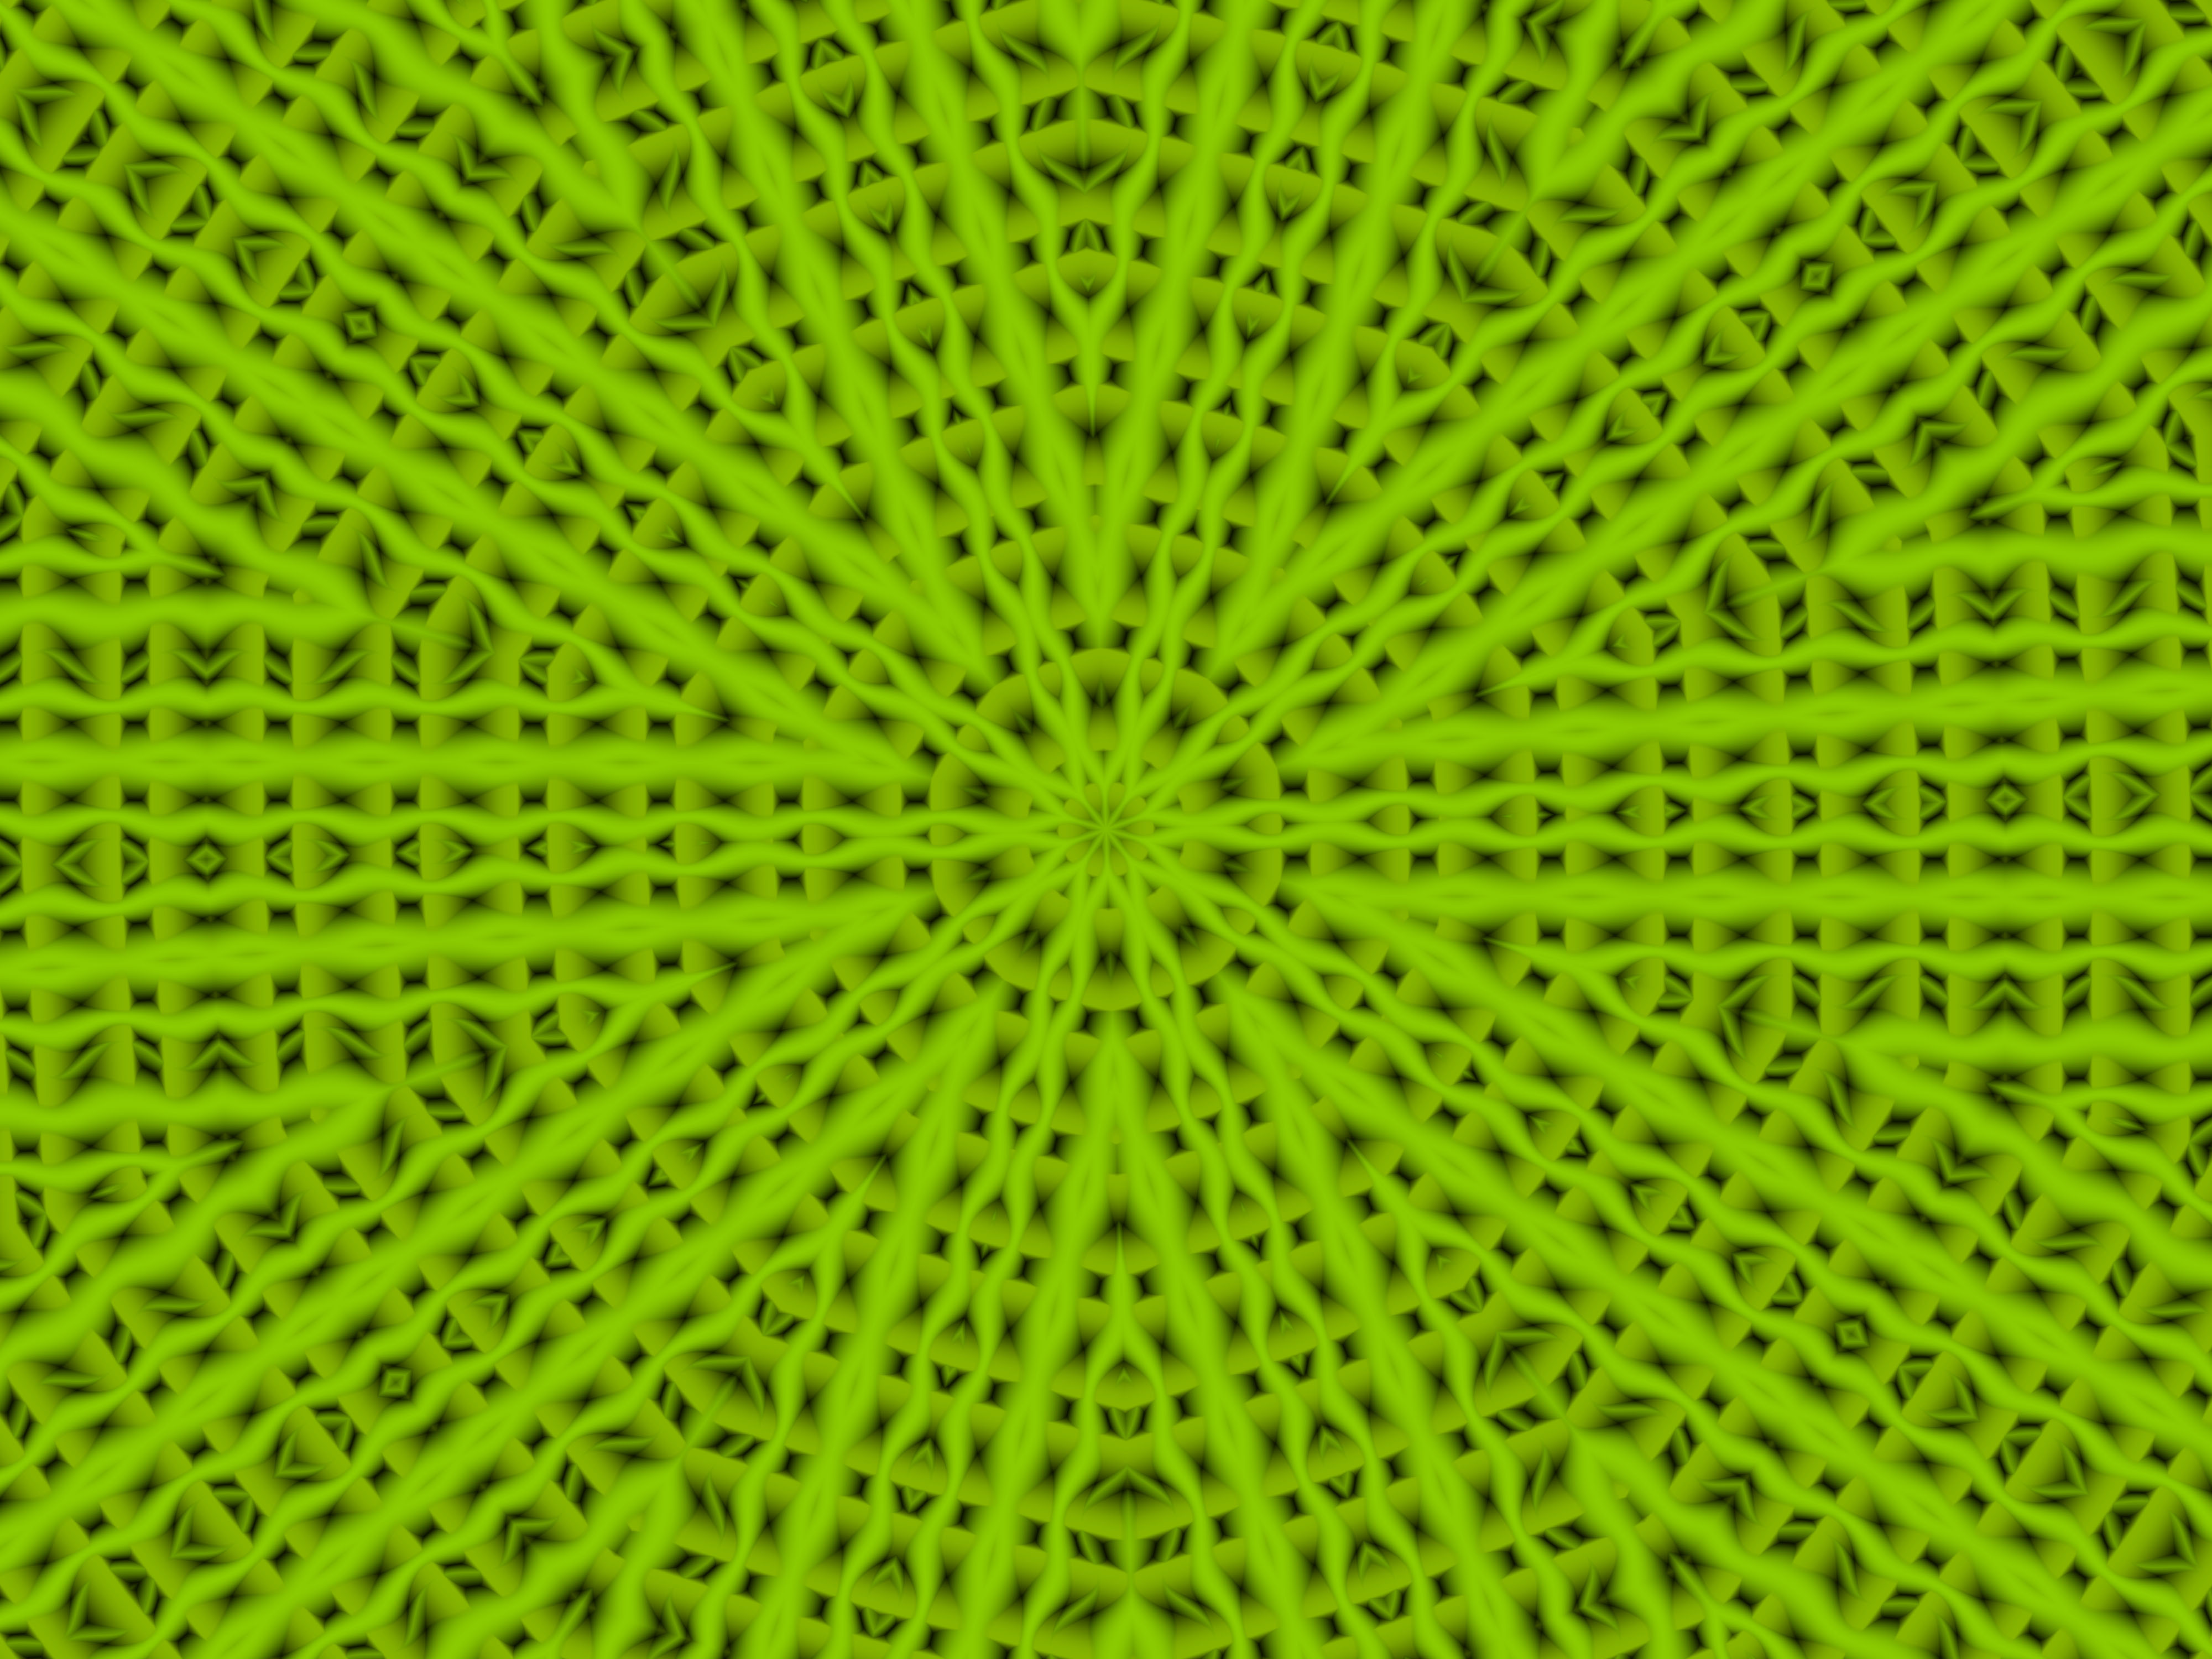 Abstract Digital Art Green Kaleidoscope 4000x3000